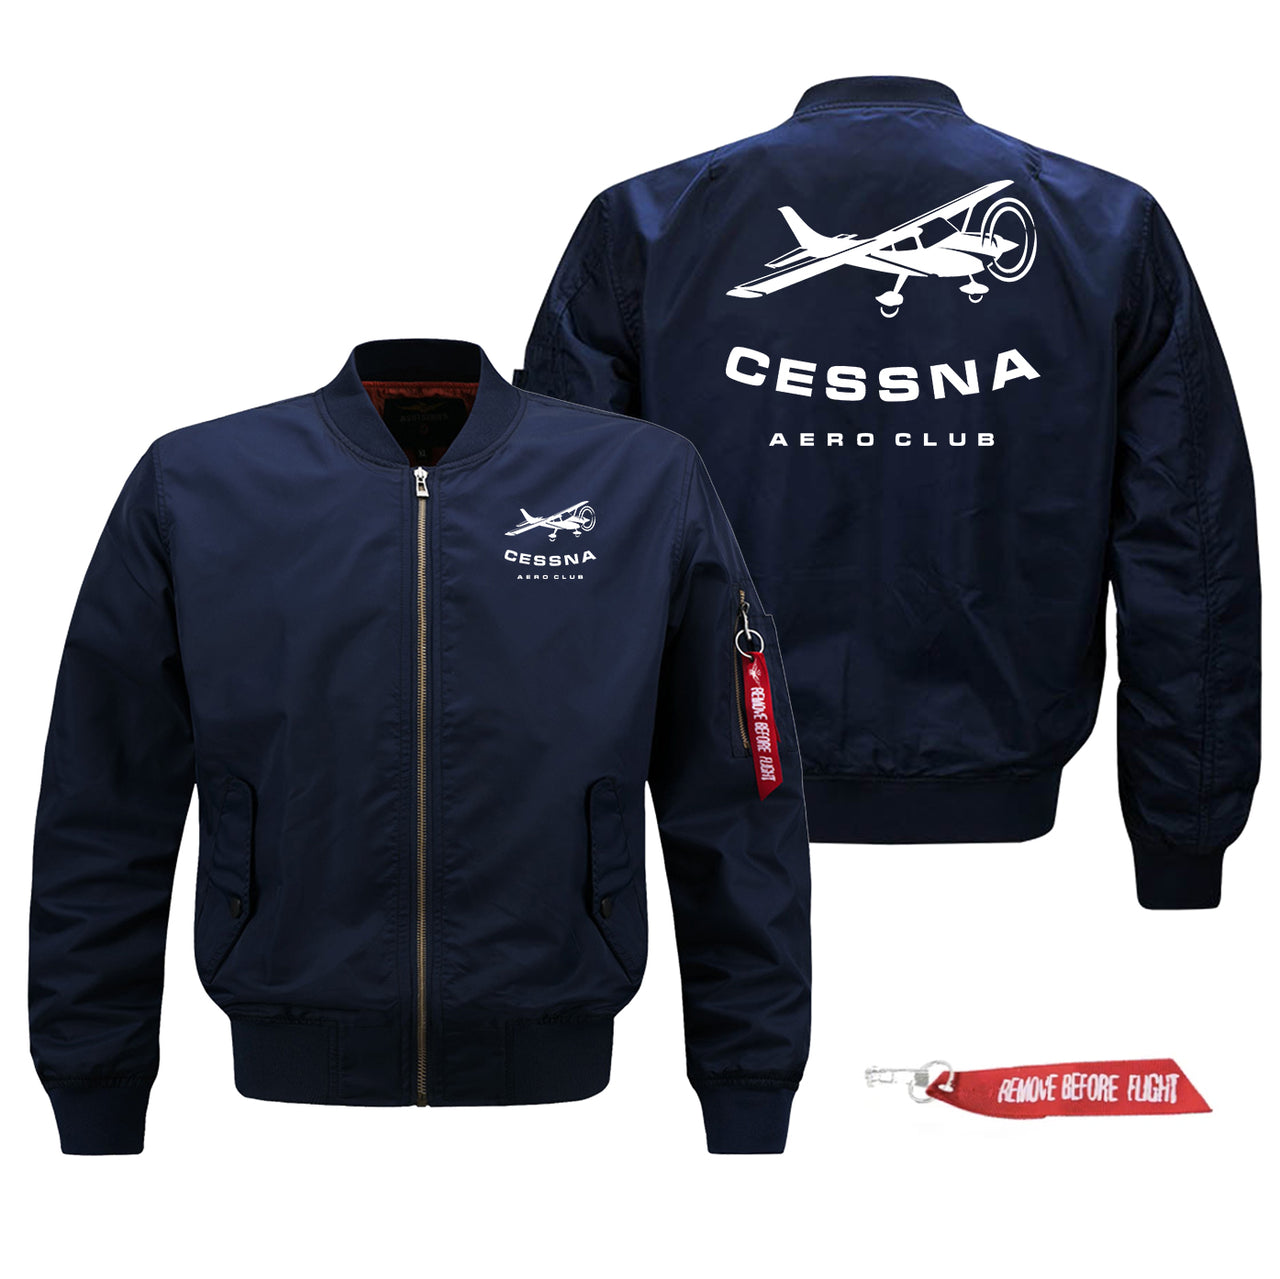 Cessna Aeroclub Designed Pilot Jackets (Customizable)